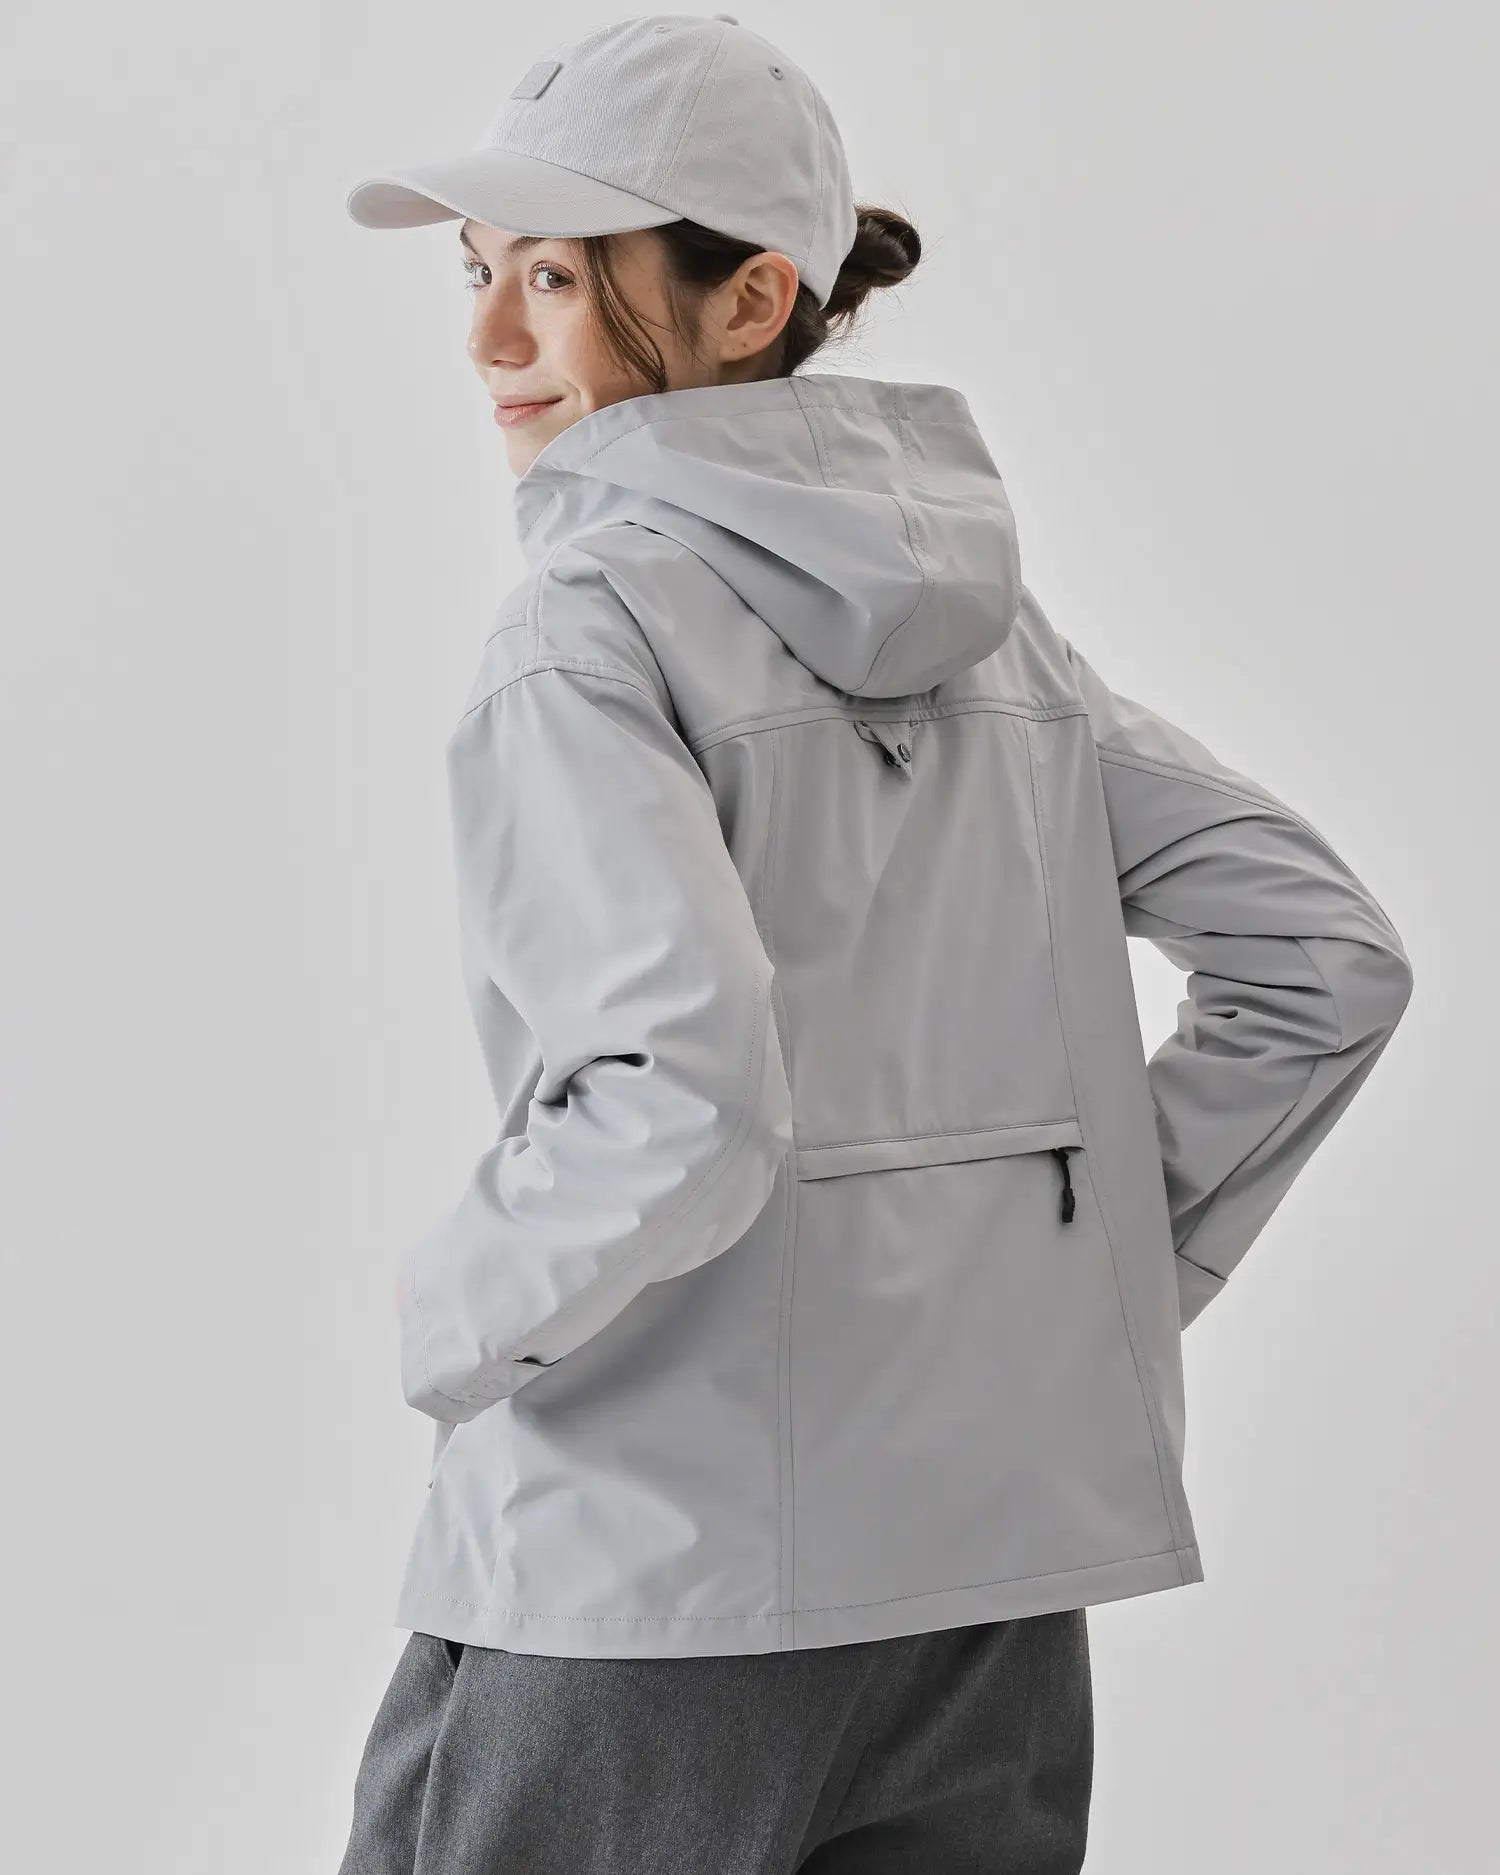 Women's Sports Jacket in Gray 06 #gray